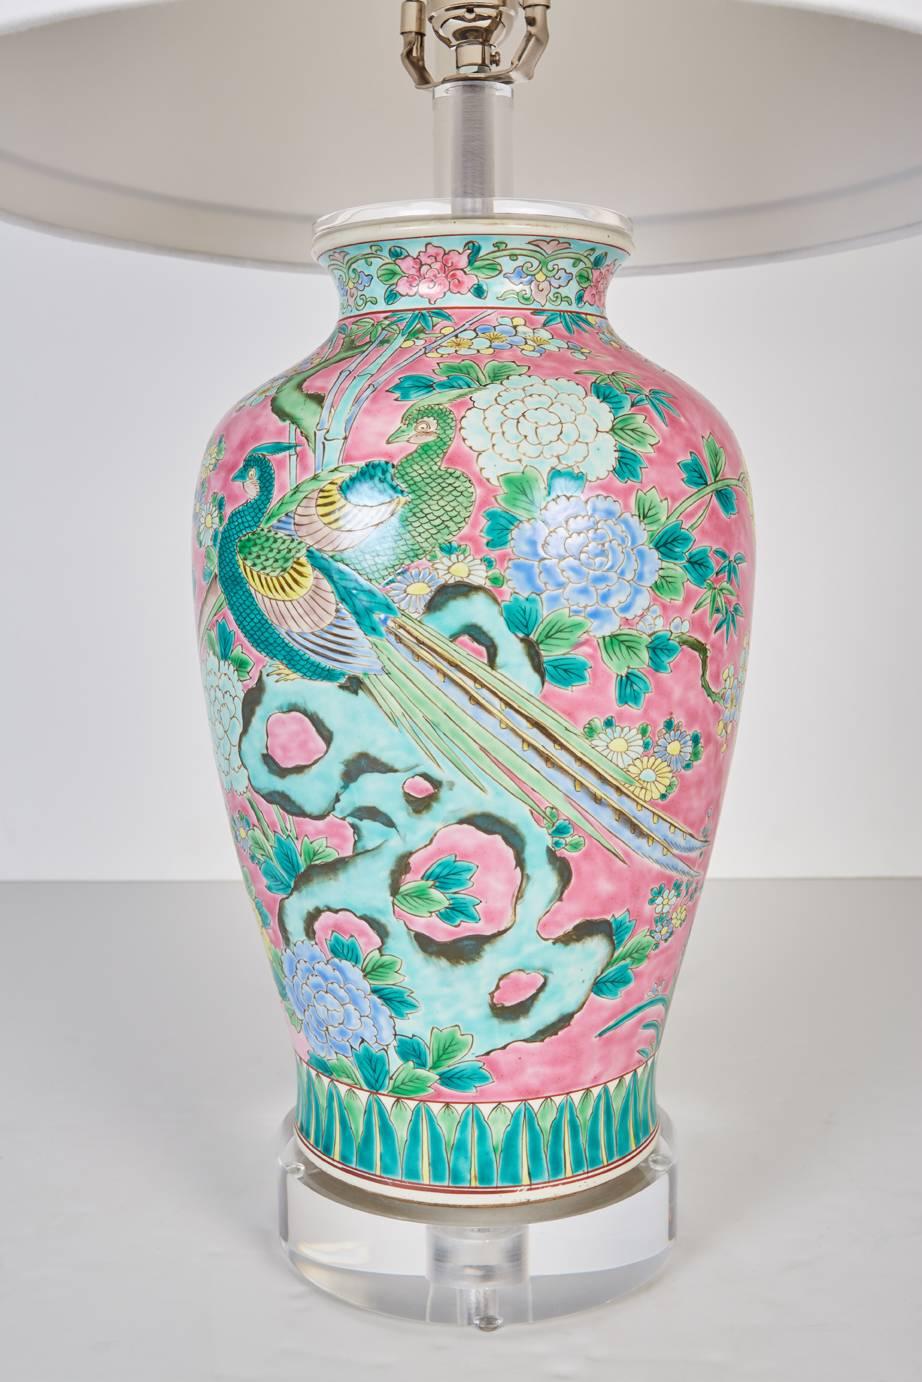 Antike japanische Vase, neu als Lampe montiert. Gemalt in einem chinesischen Stil mit mehrfarbigen Blumen- und Vogelmotiven vor einem leuchtend rosa Hintergrund, jetzt als Lampe montiert. Lampe mit neuem, maßgefertigtem Lucite-Sockel und neuem,